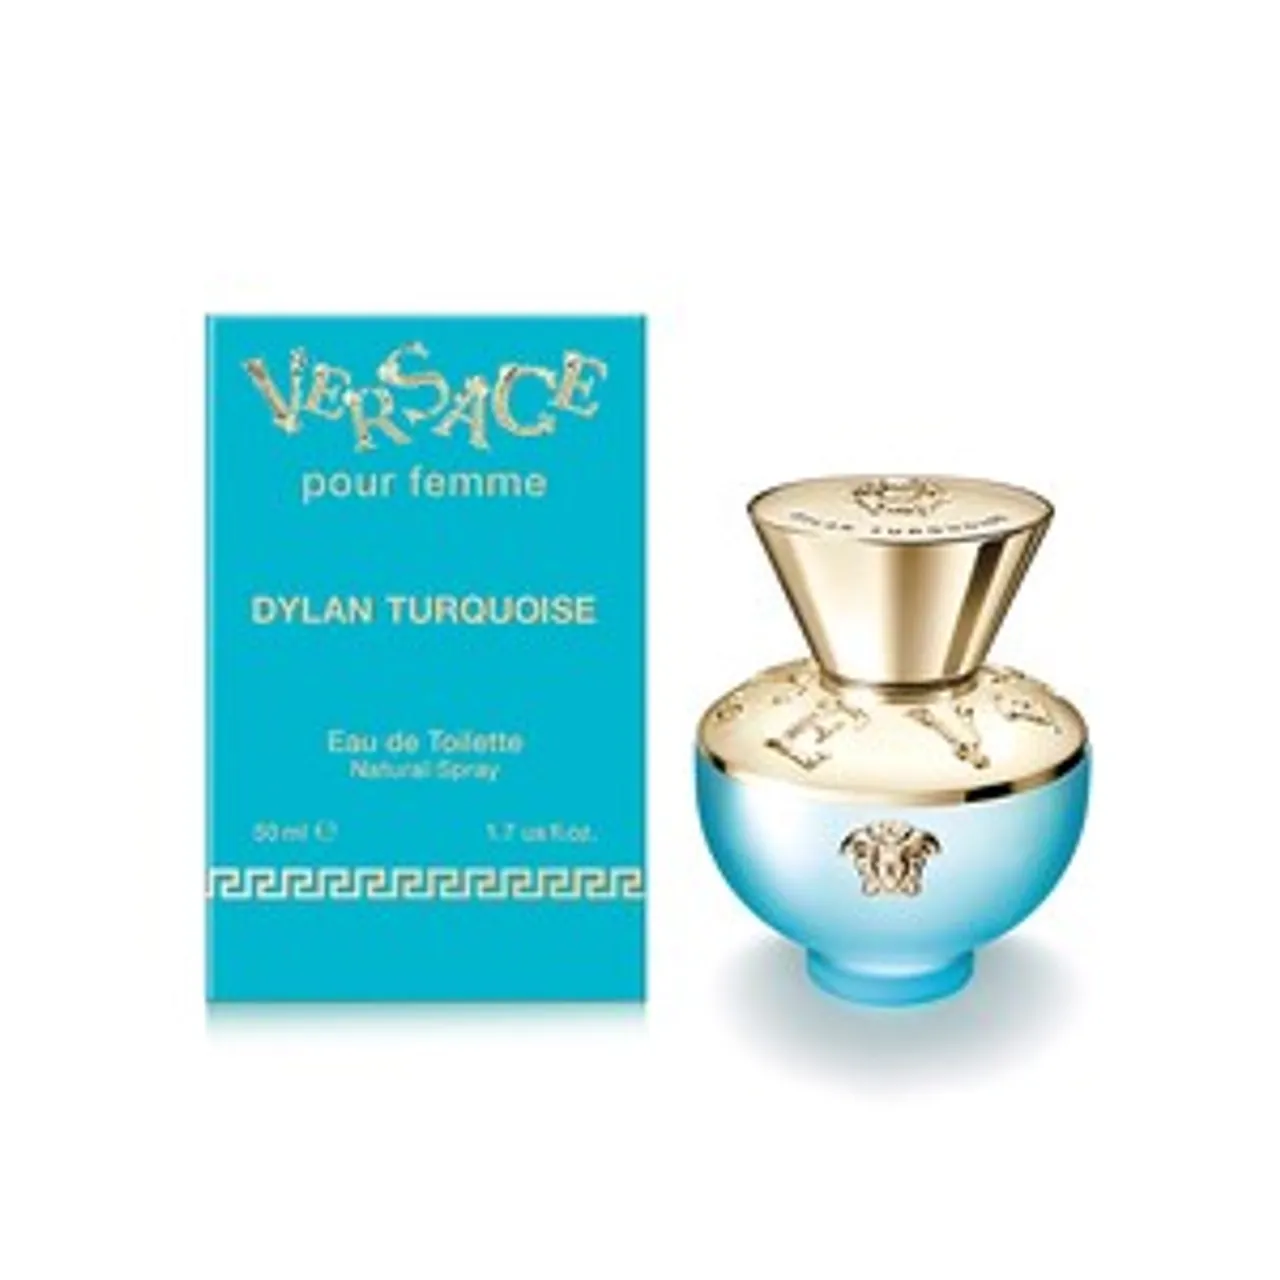 Versace Dylan Turquoise EAU DE TOILETTE 50 ML